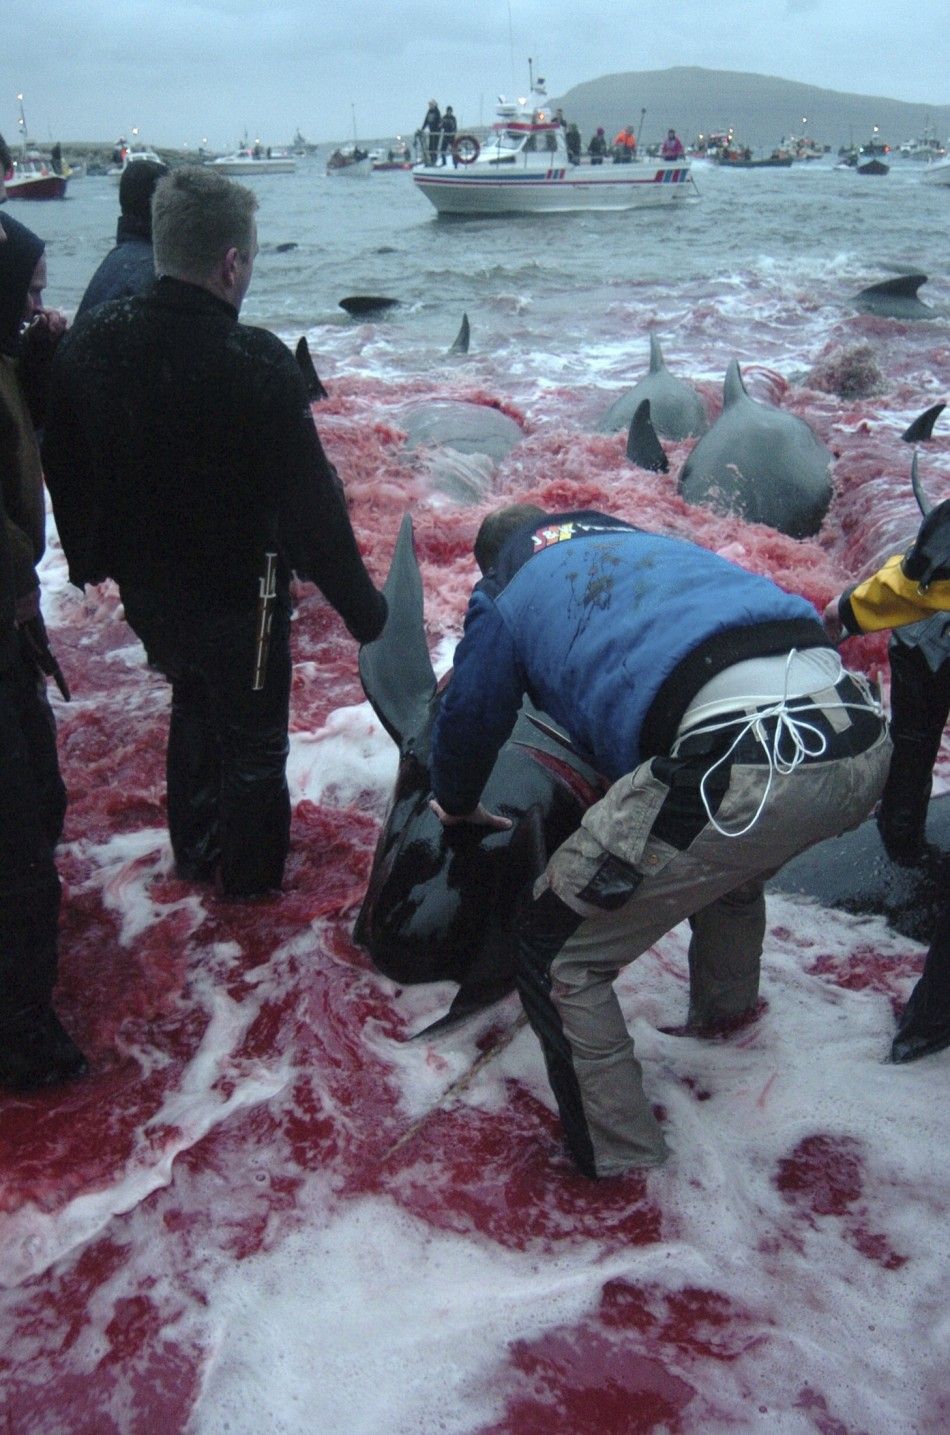 Whale Slaughter in Faroe Islands